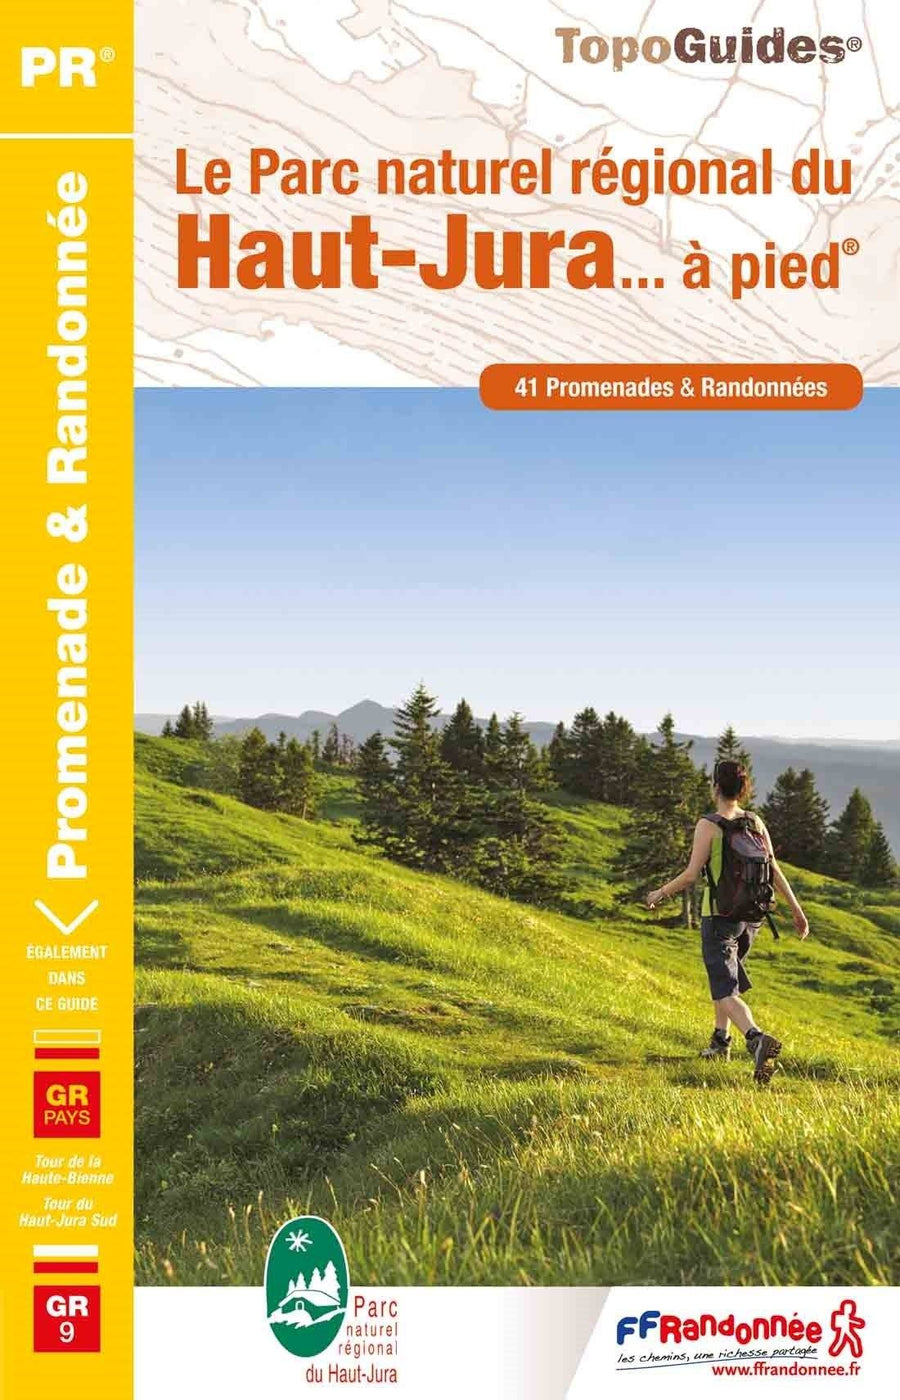 Topoguide de randonnée - Le Parc naturel régional du Haut-Jura | FFR guide de randonnée FFR - Fédération Française de Randonnée 